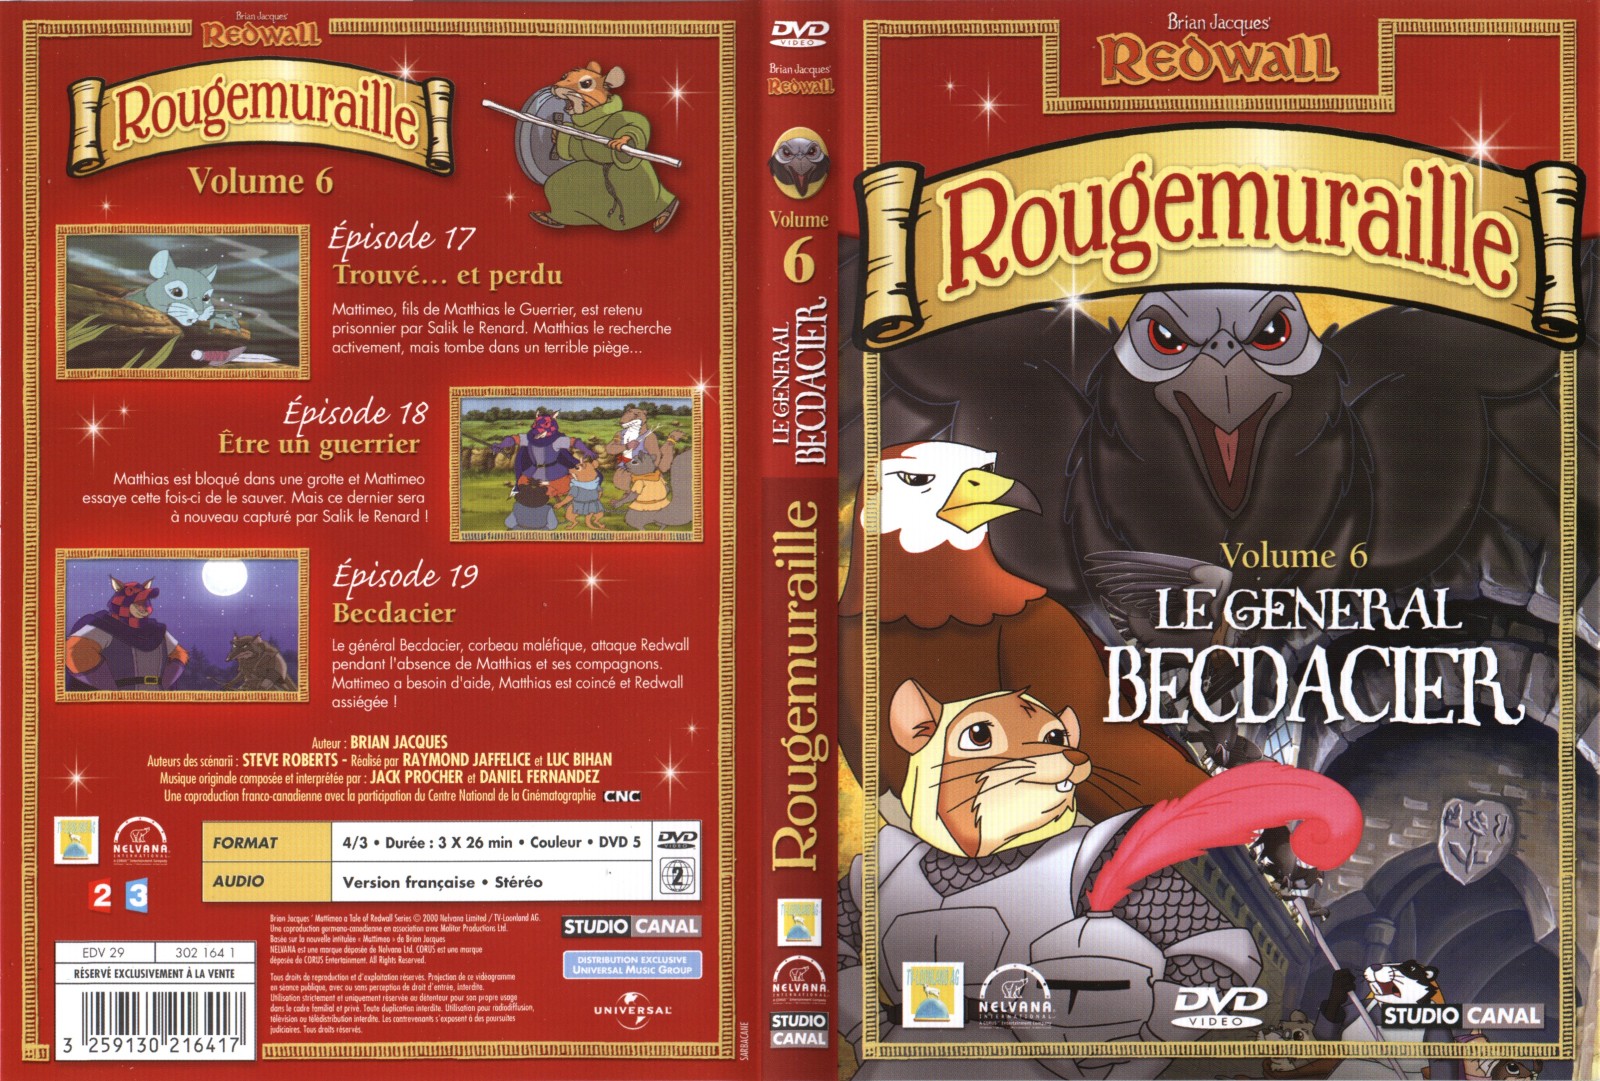 Jaquette DVD Rougemuraille vol 6